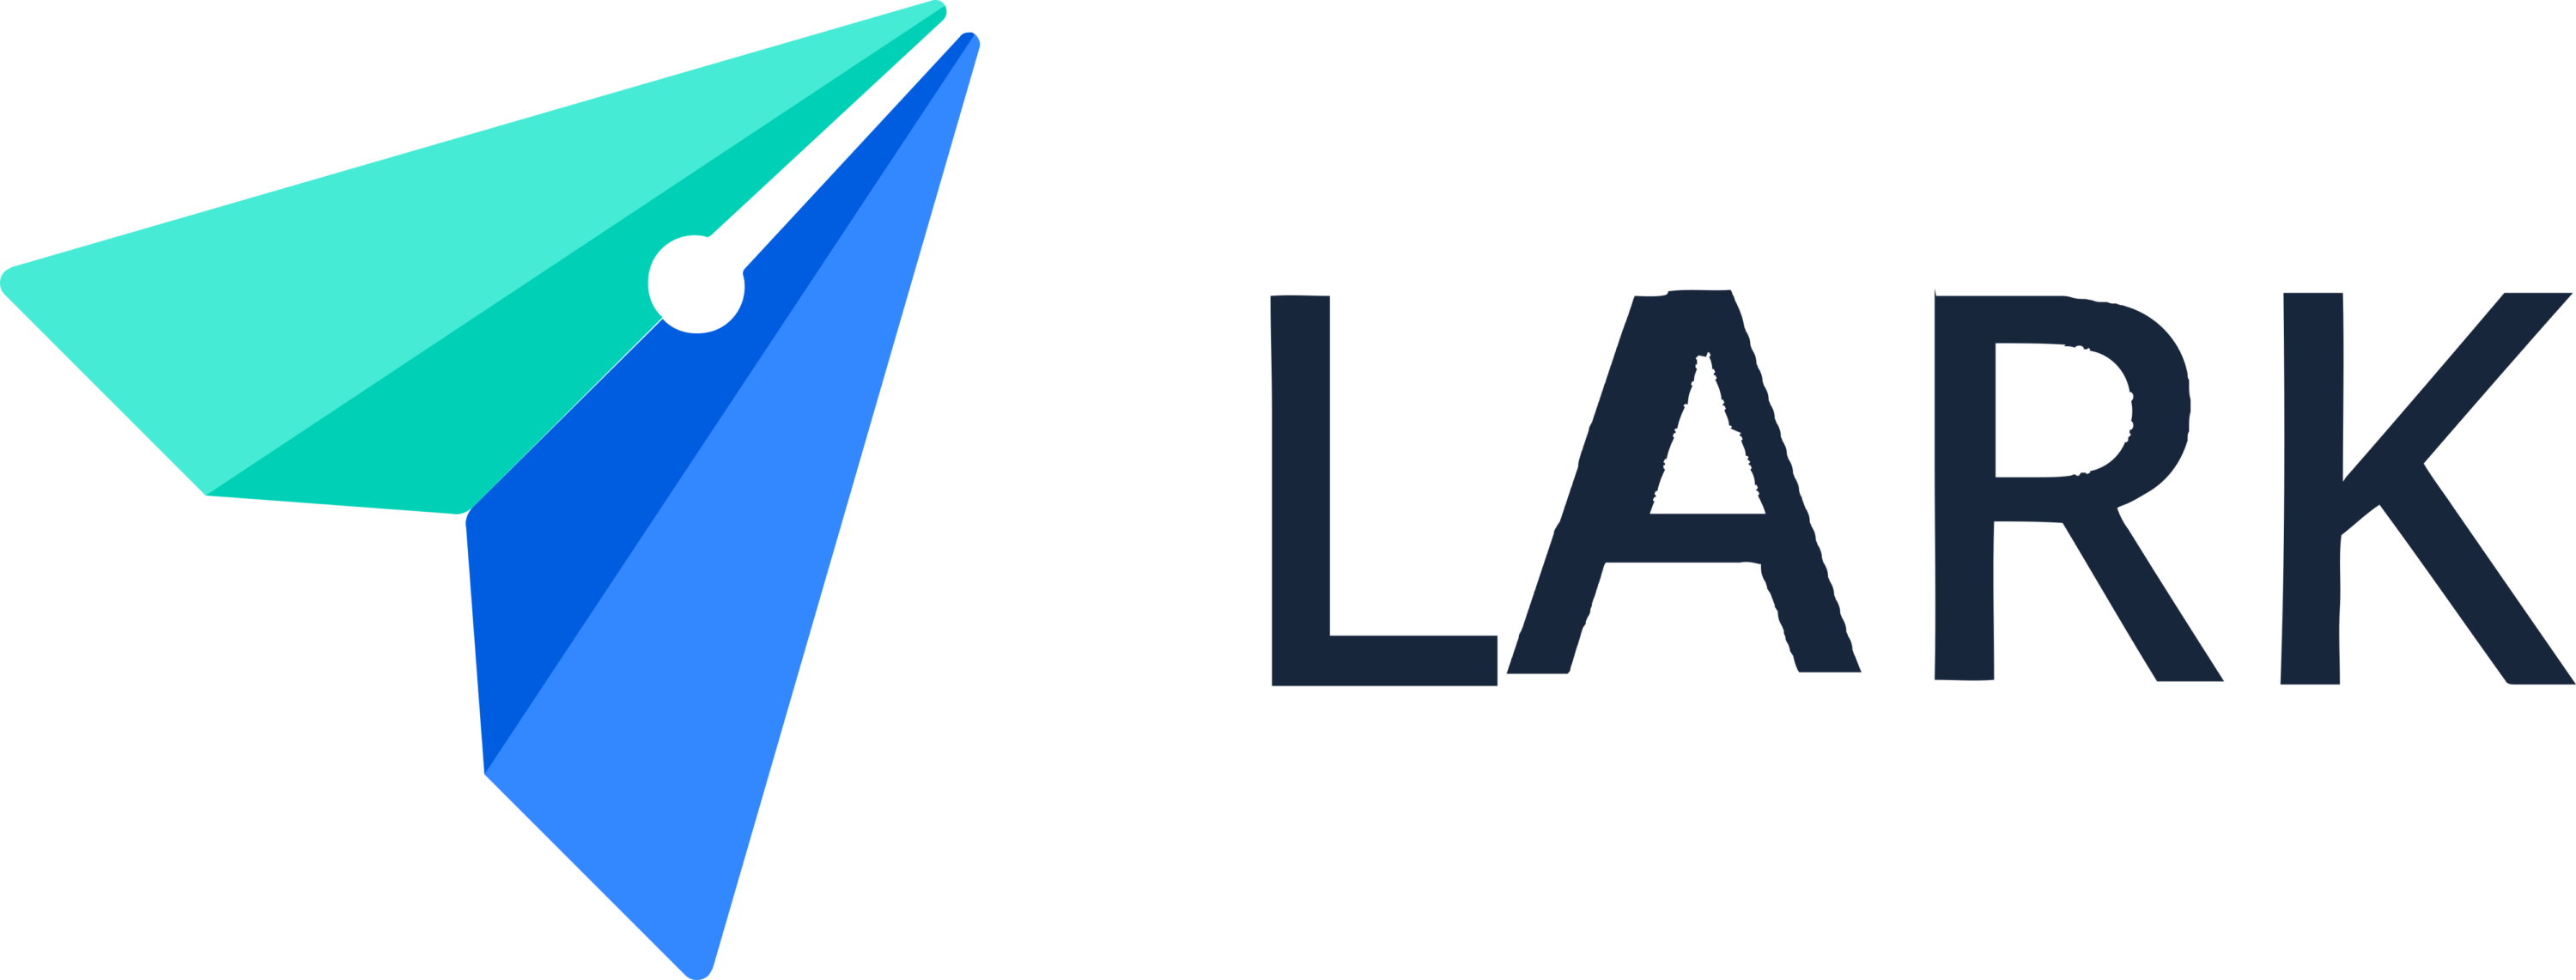 Lark Logo